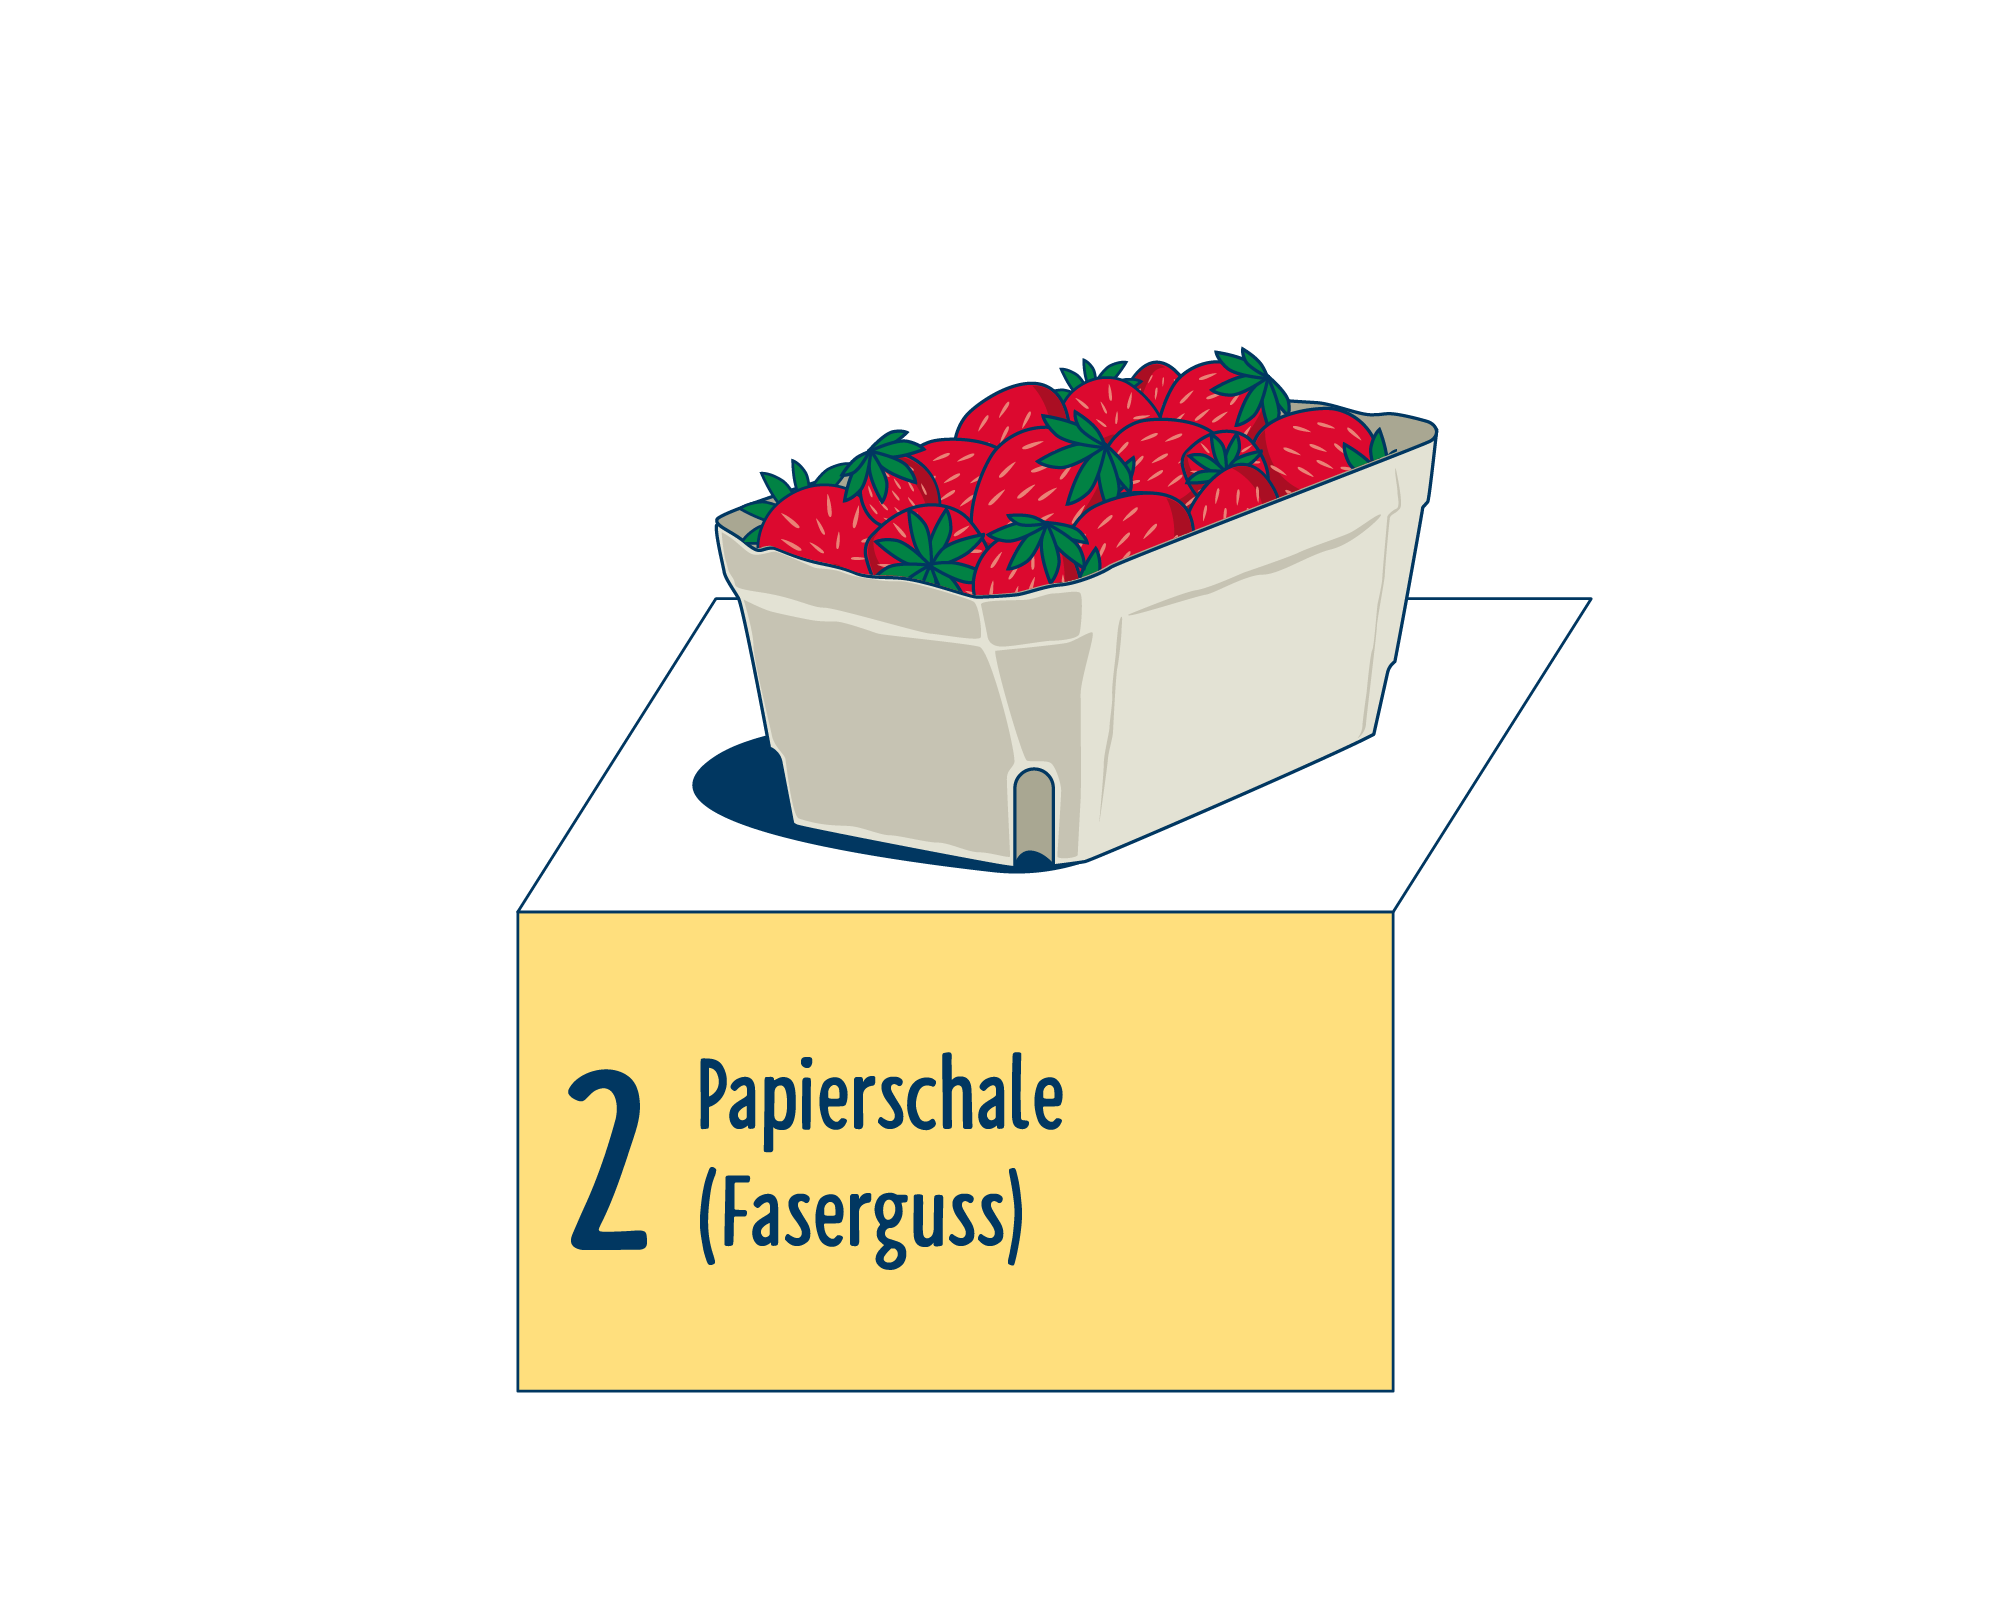 Bild Produktverpackung von Obst & Gemüse: Schalen eingeordnet auf Platz 2, bestehend aus Papierschale (Faserguss).